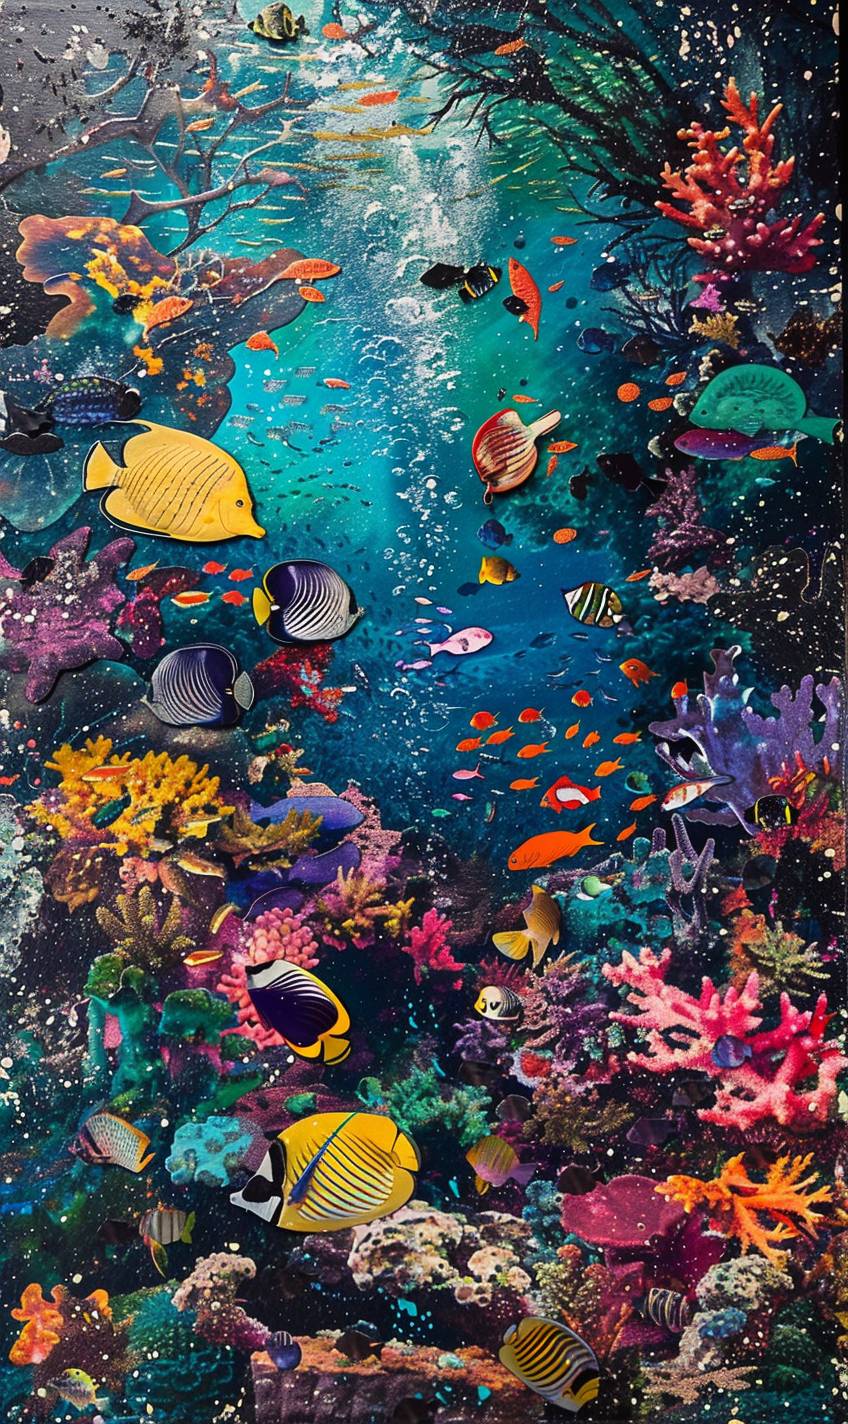 ヘルマン・ブロードによる生き生きとした海底のサンゴ礁、色とりどりの魚や海洋生物で溢れている